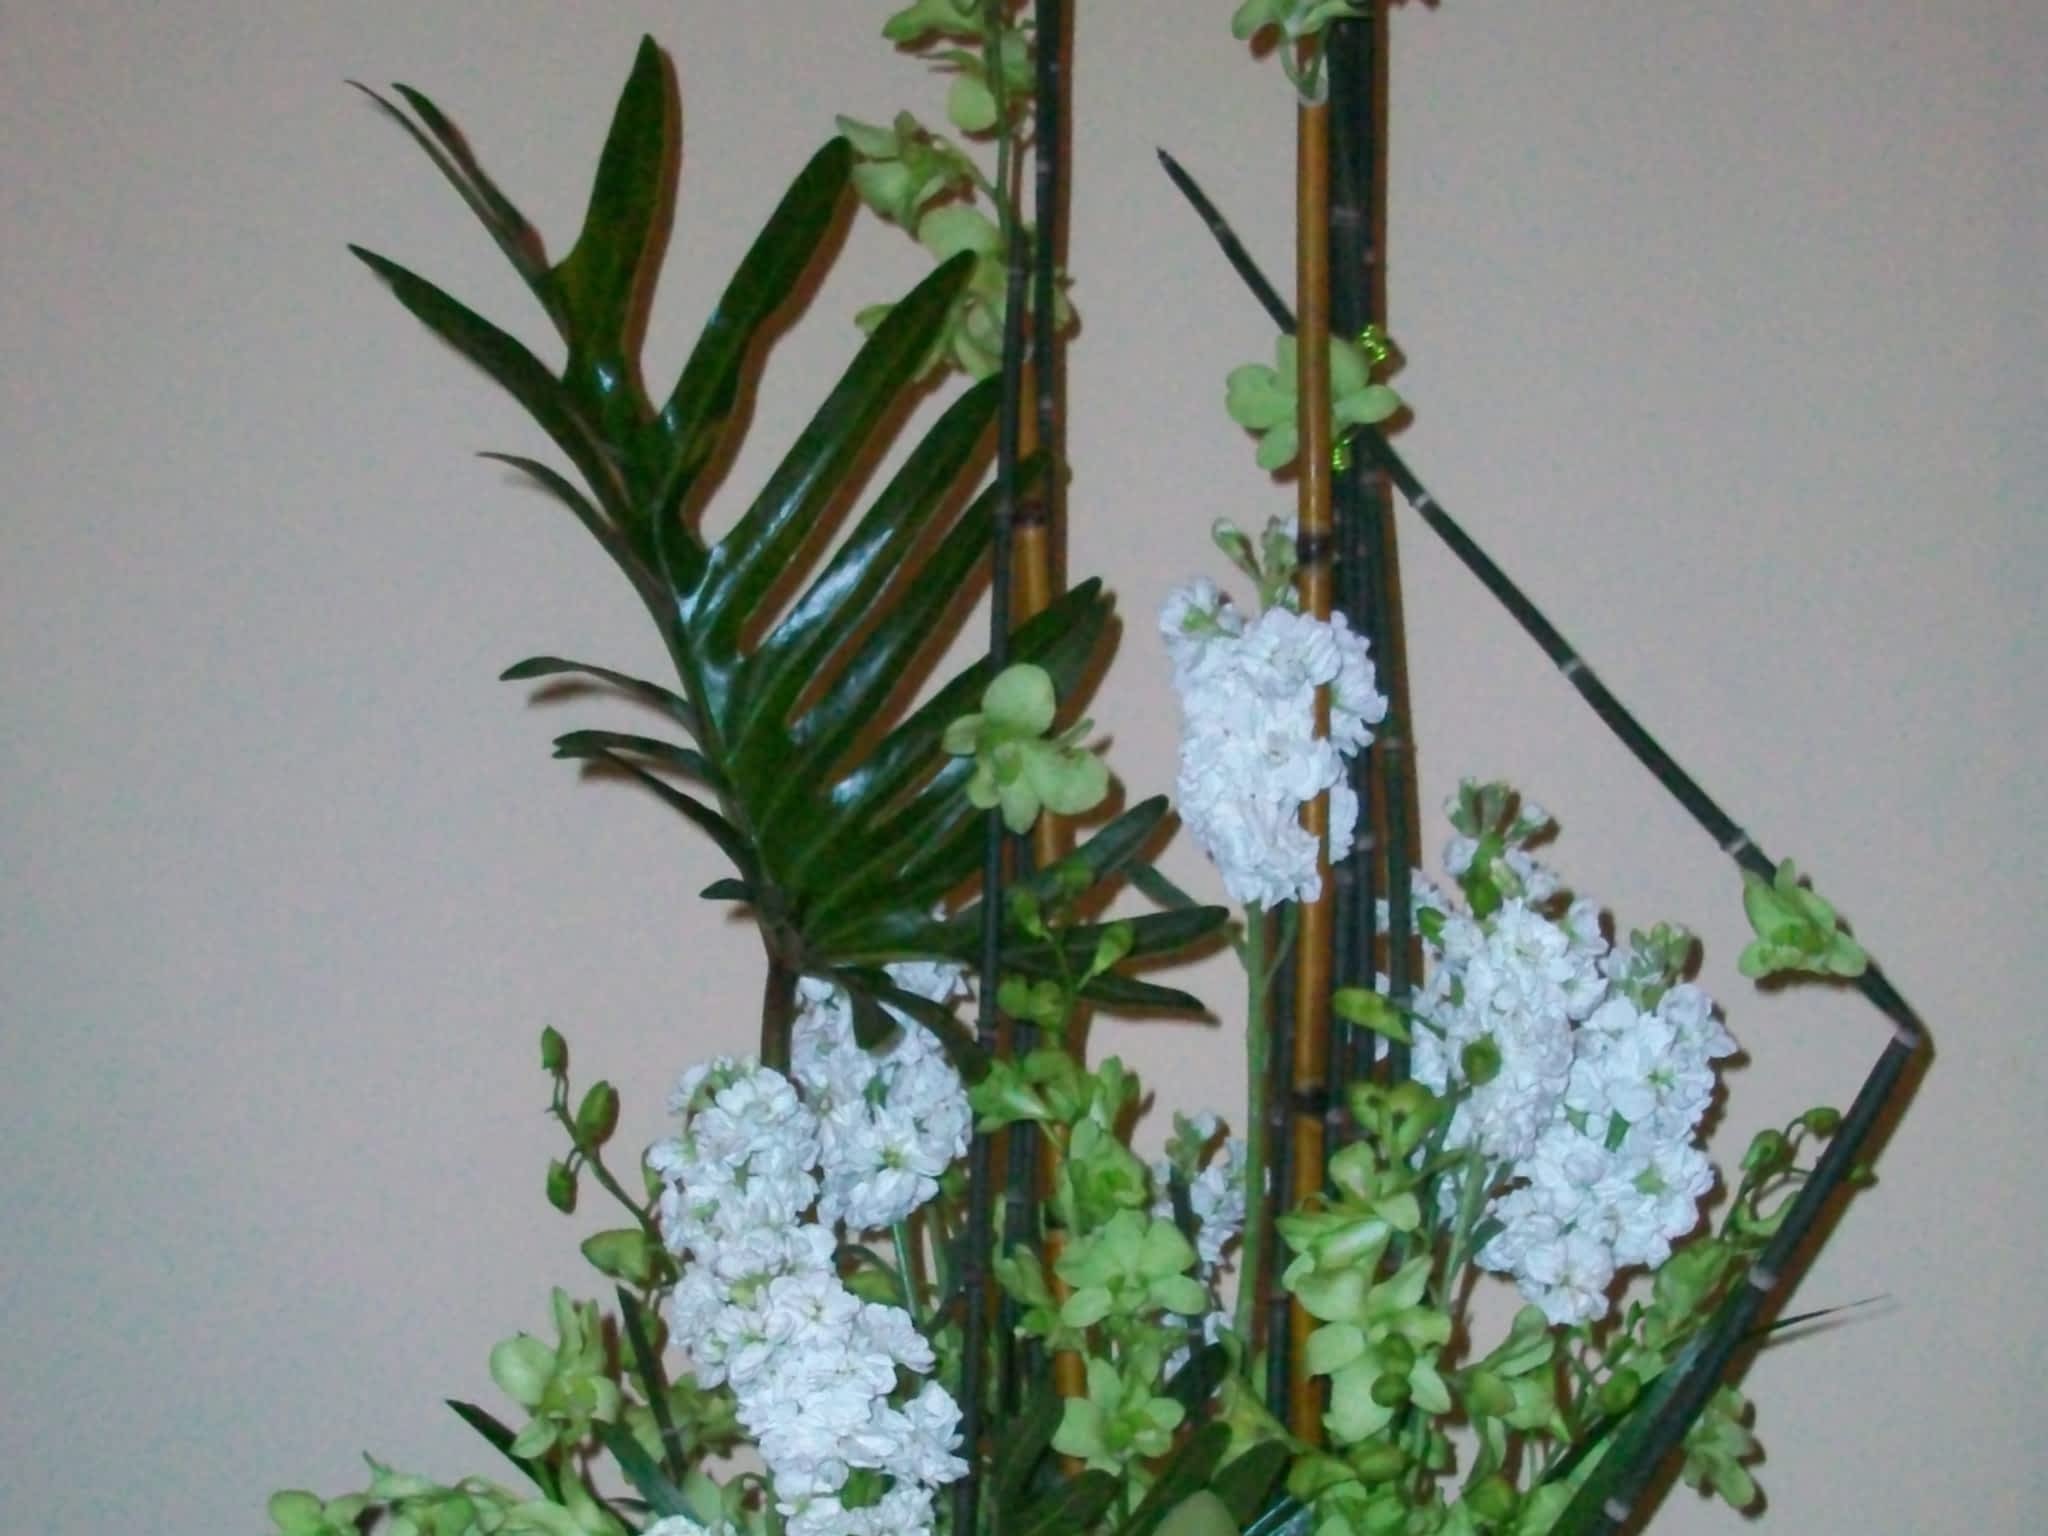 photo Malgosia's Flower Adornments